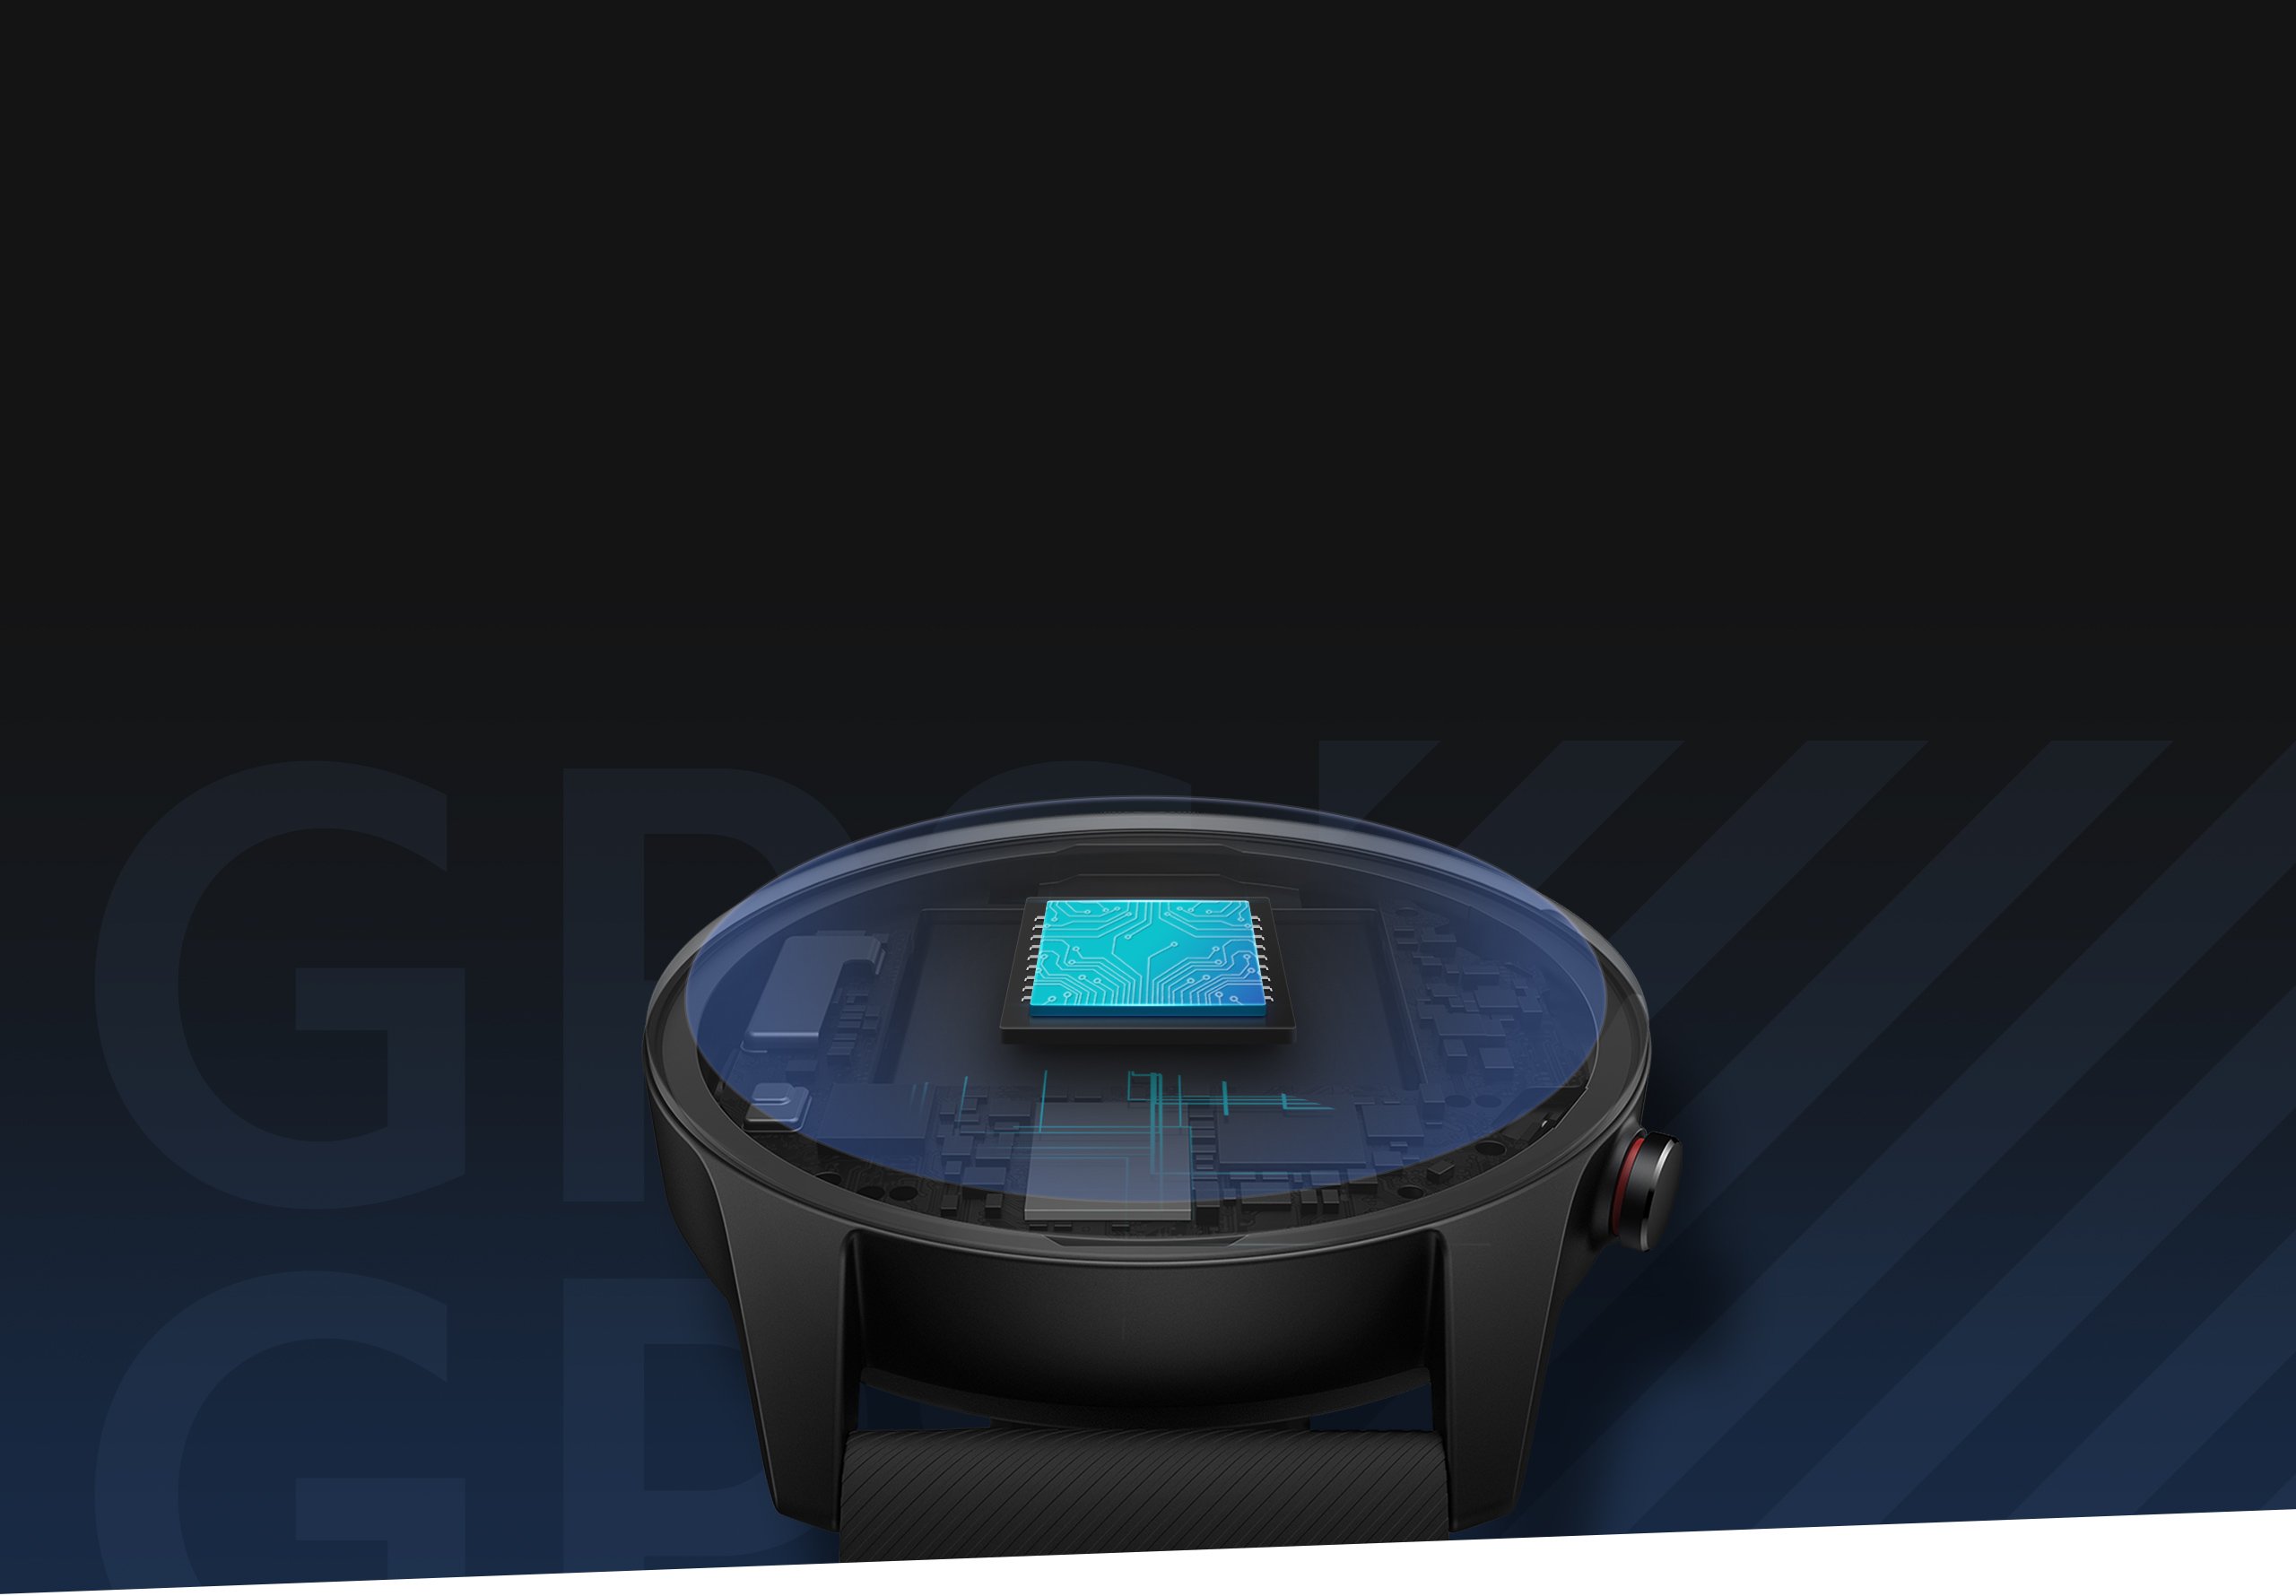 Xiaomi Mi Watch (Azul) - Smartwatch - LDLC